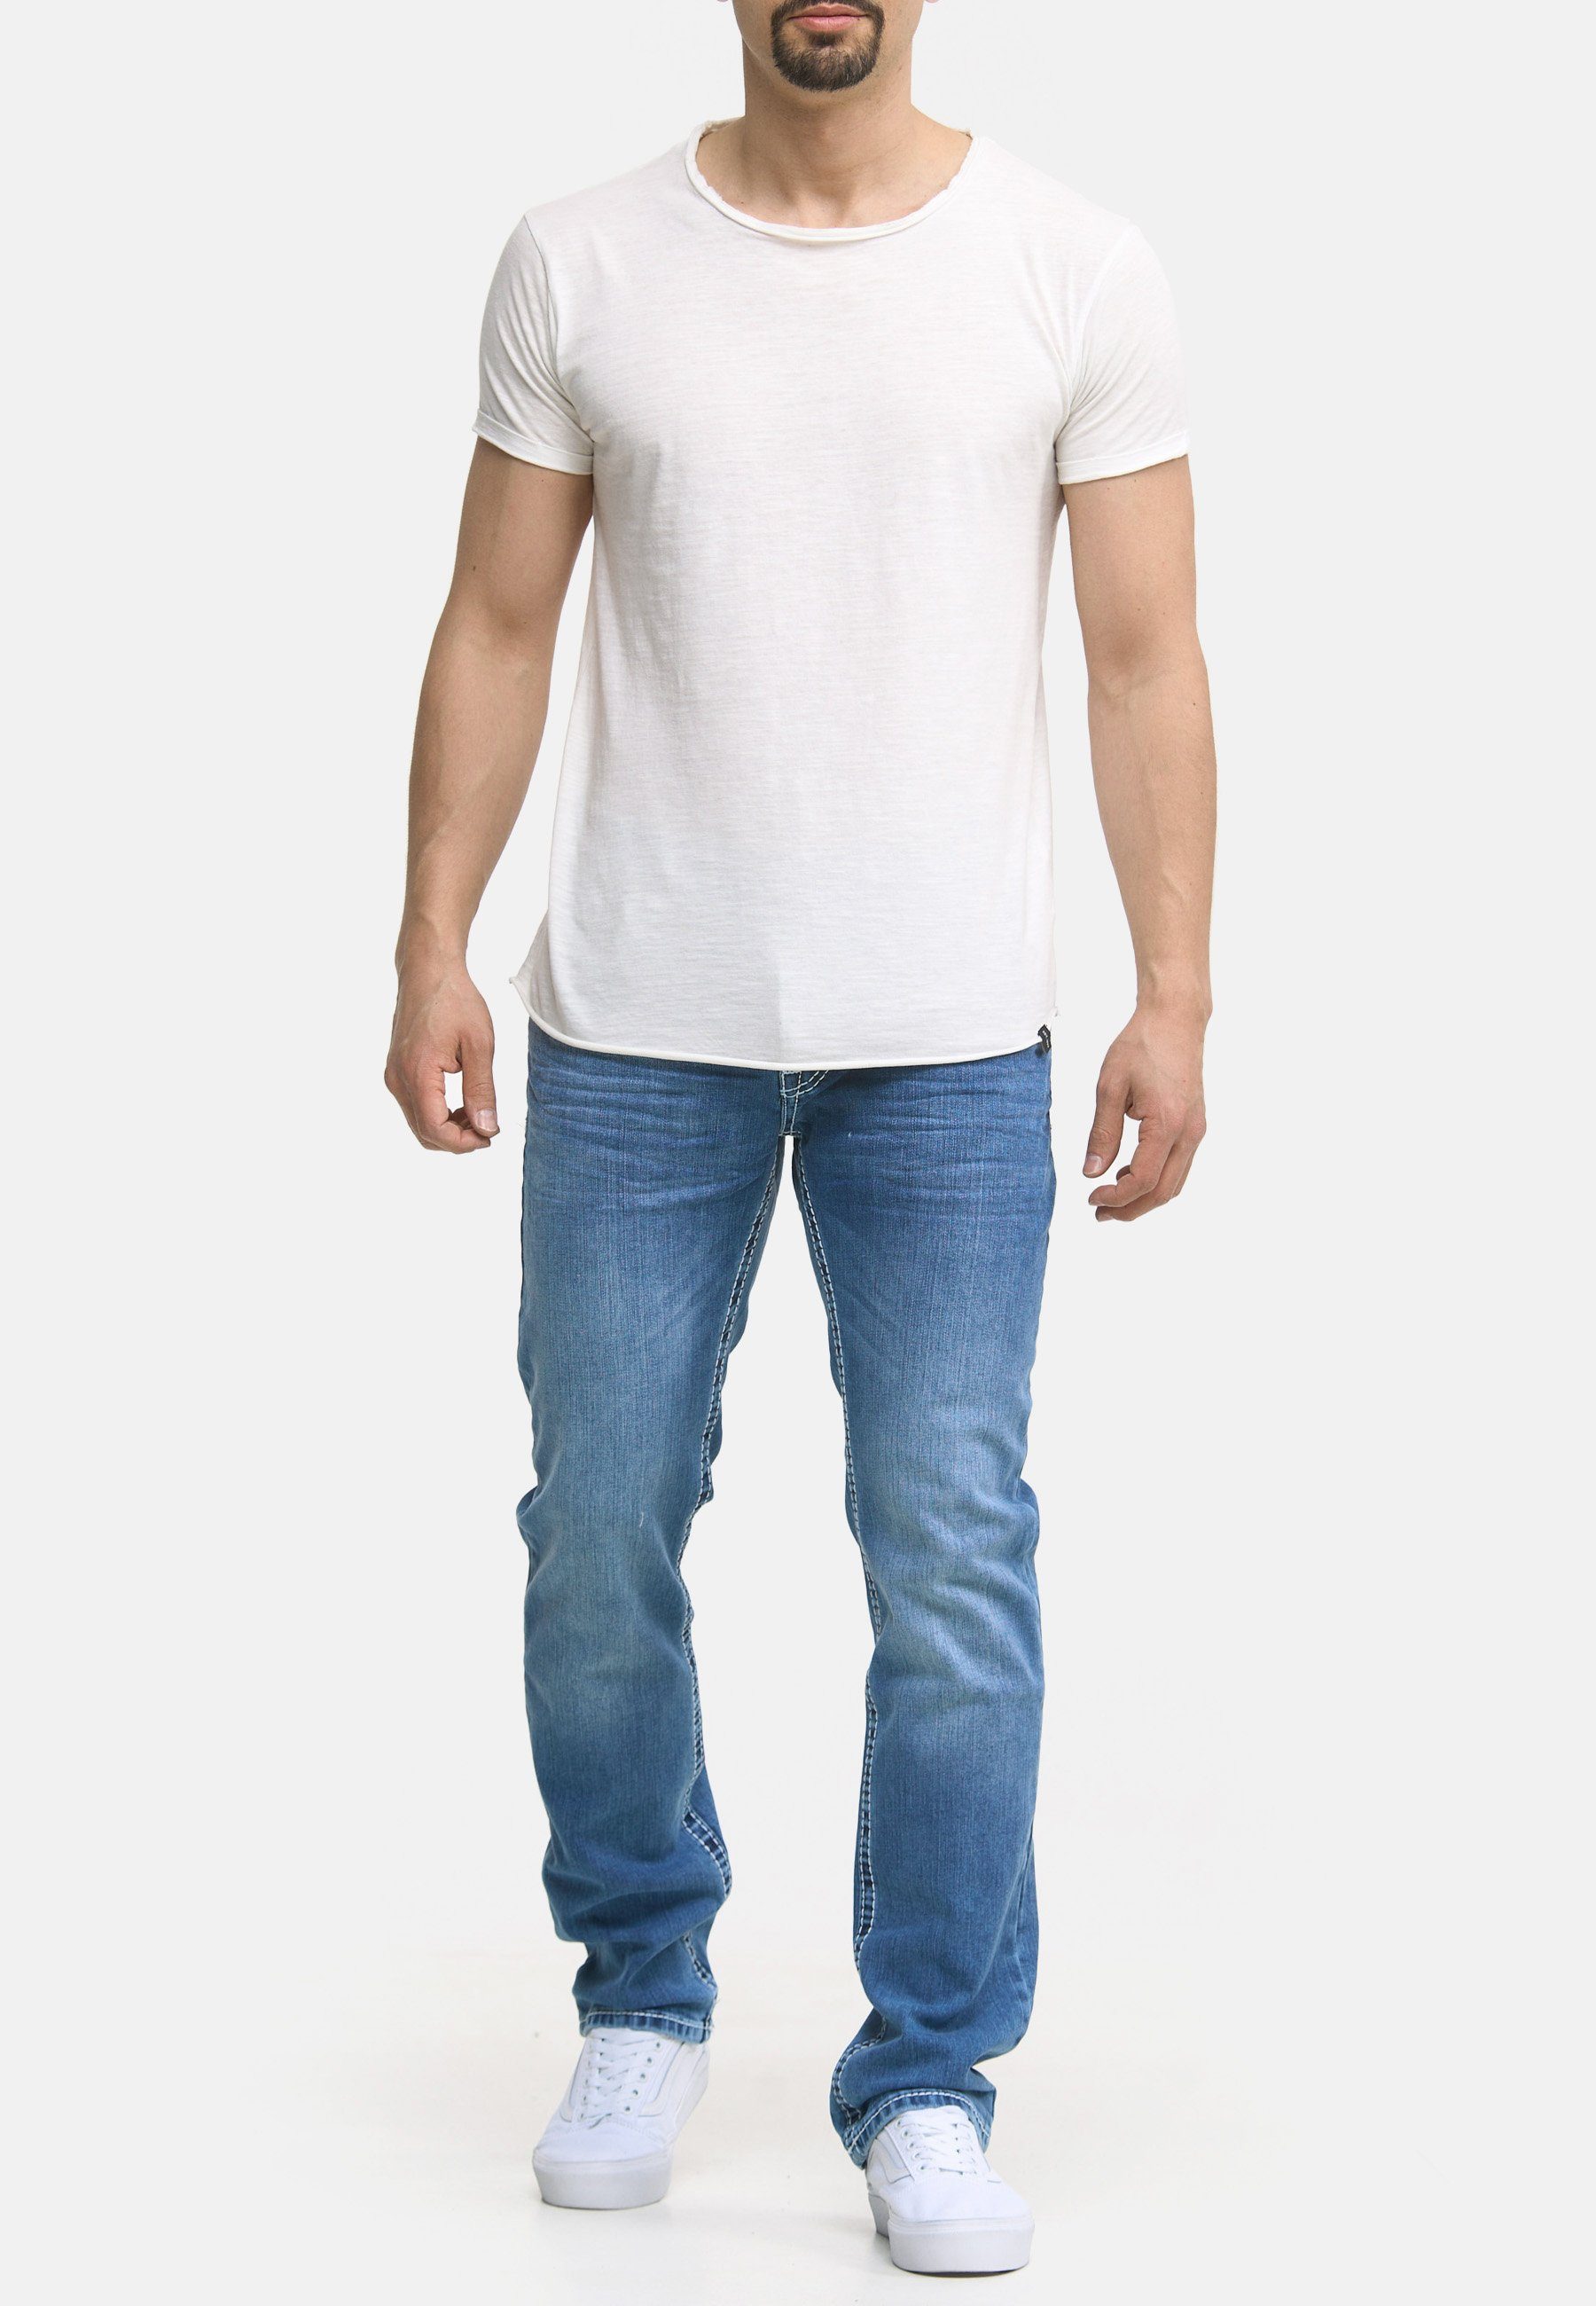 Jeans Pocket Herren Denim Regular blue light Code47 Hose Regular-fit-Jeans Bootcut Männer Fit Five Code47 904